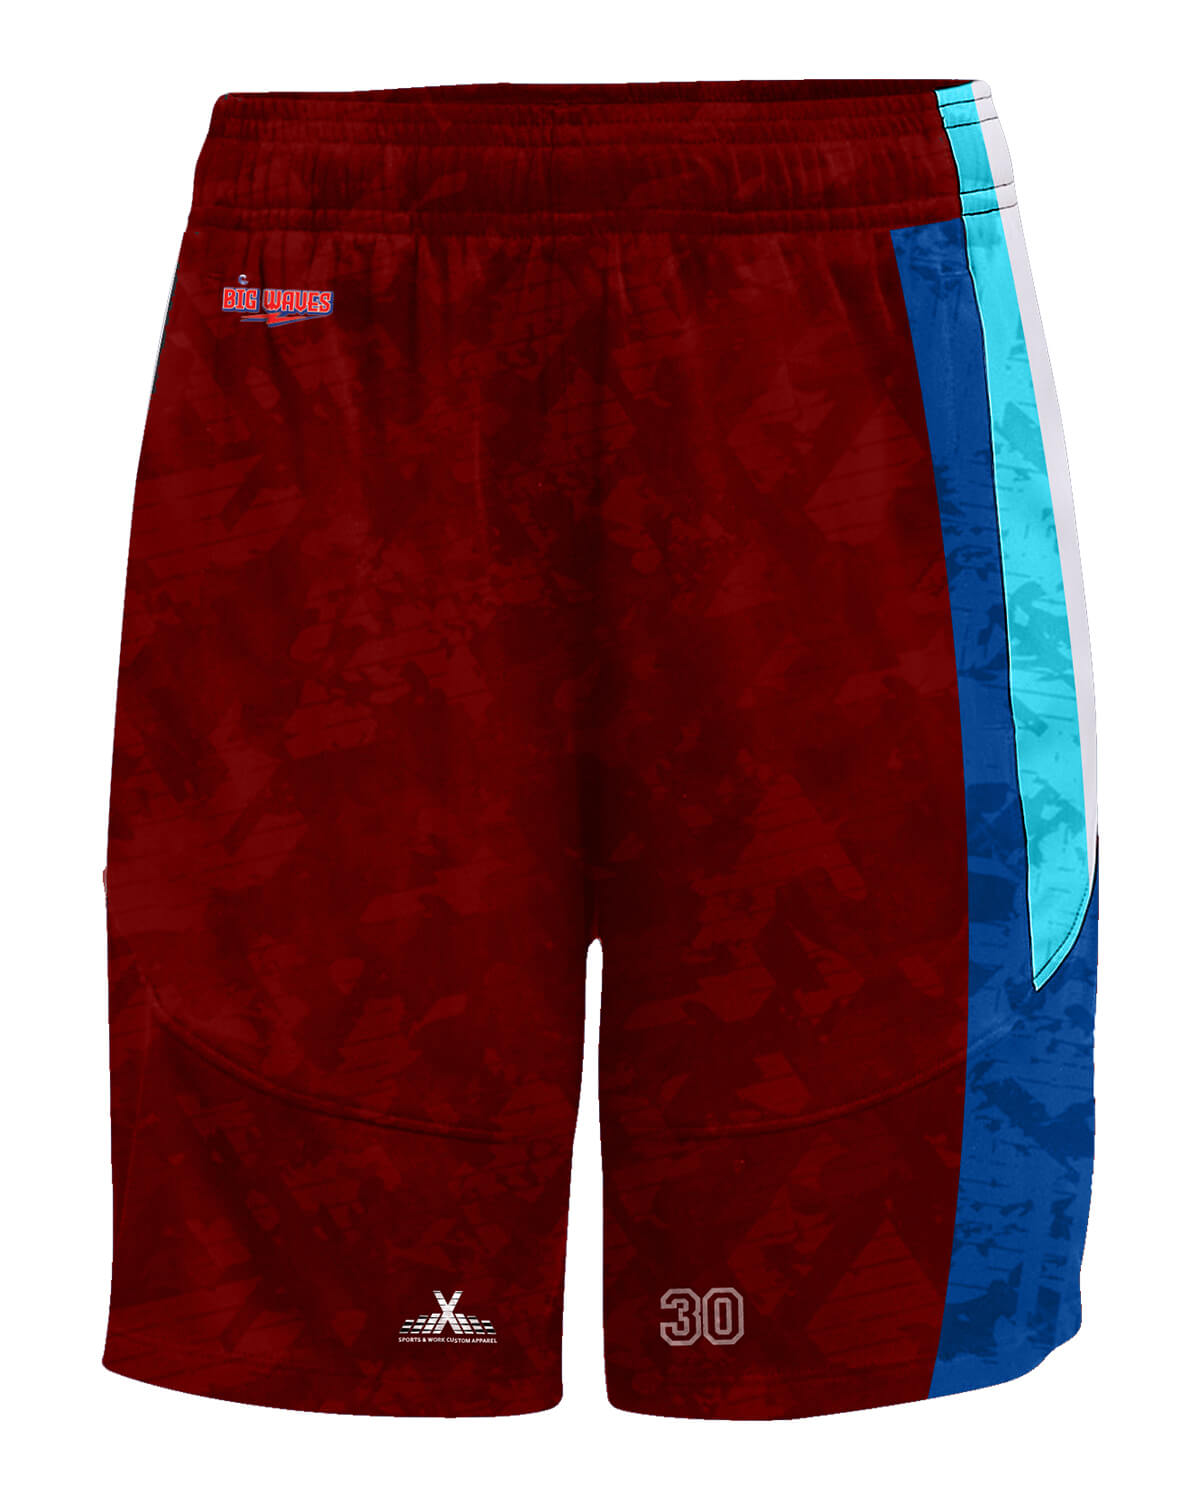 Athleisurex Full Custom Basketball Reversible Shorts - For Women